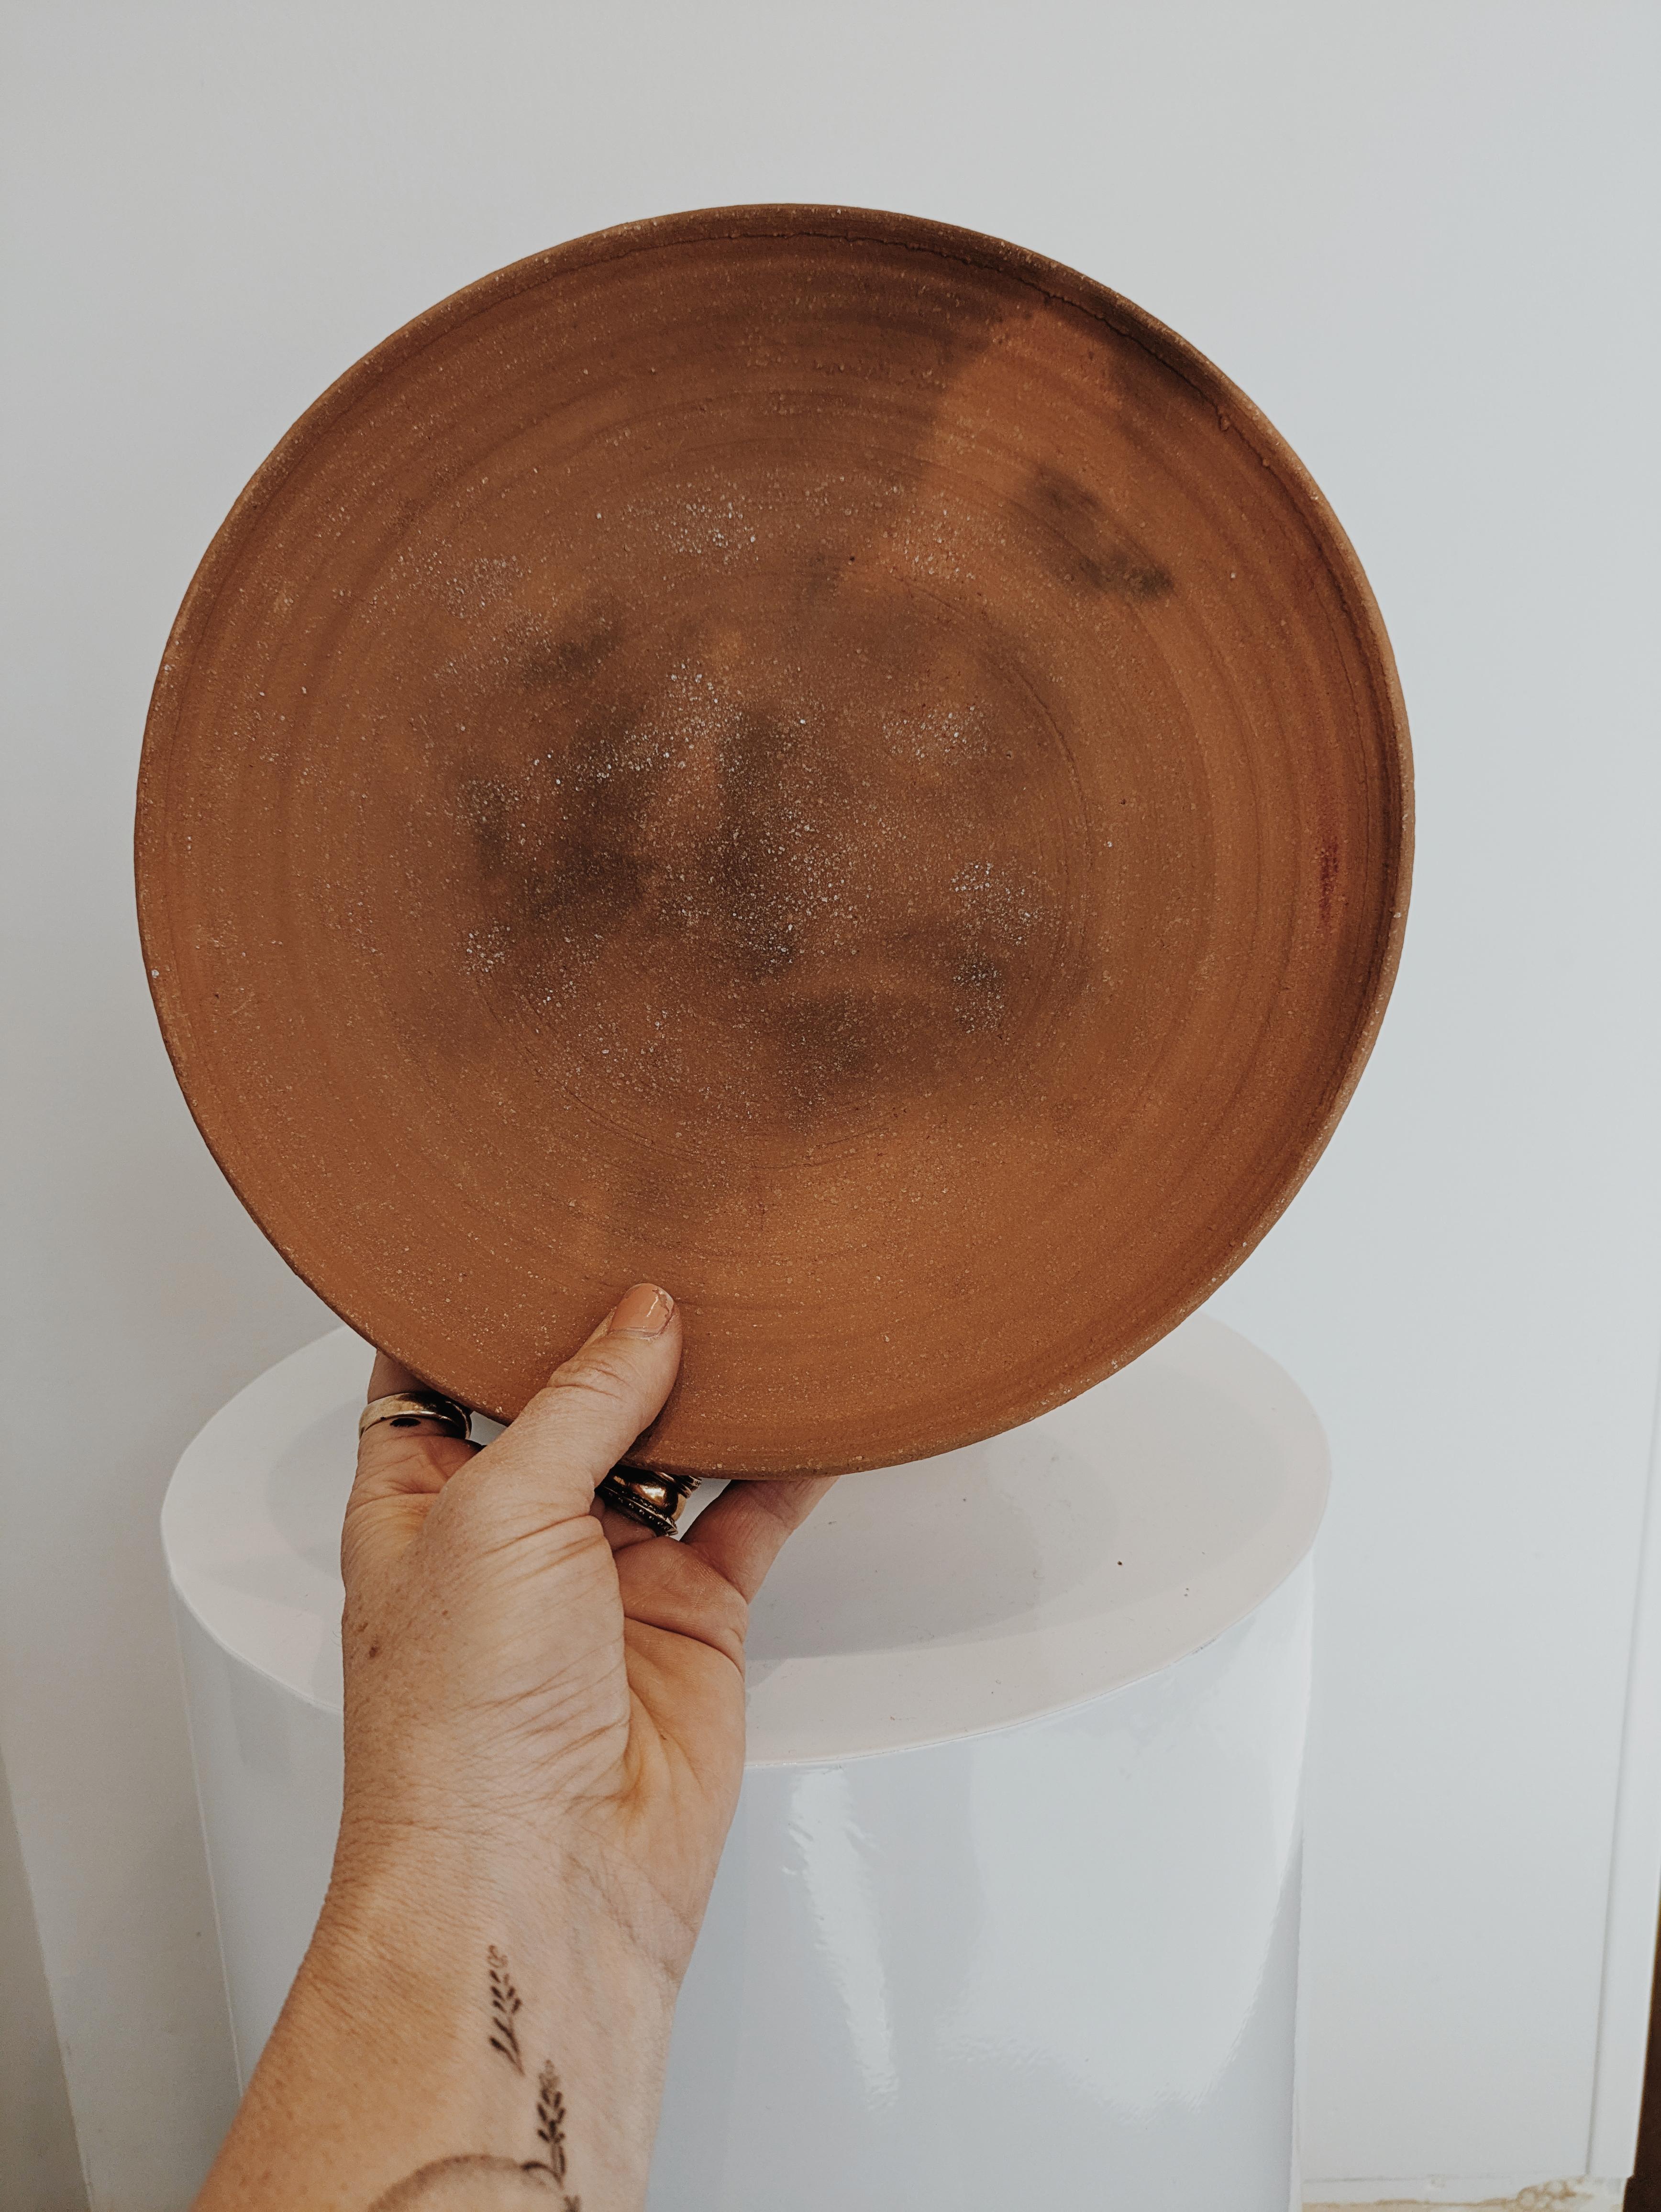 Inspiriert von der alten Kunstform des Brennens von Keramik in einer Erdgrube, ist Erin Hupps neueste Kollektion von Grubenbrandkeramik ein einmaliges Werk, das es nur einmal im Jahrzehnt (oder im Leben) gibt.

Jedes Stück wird von Hand aus einem